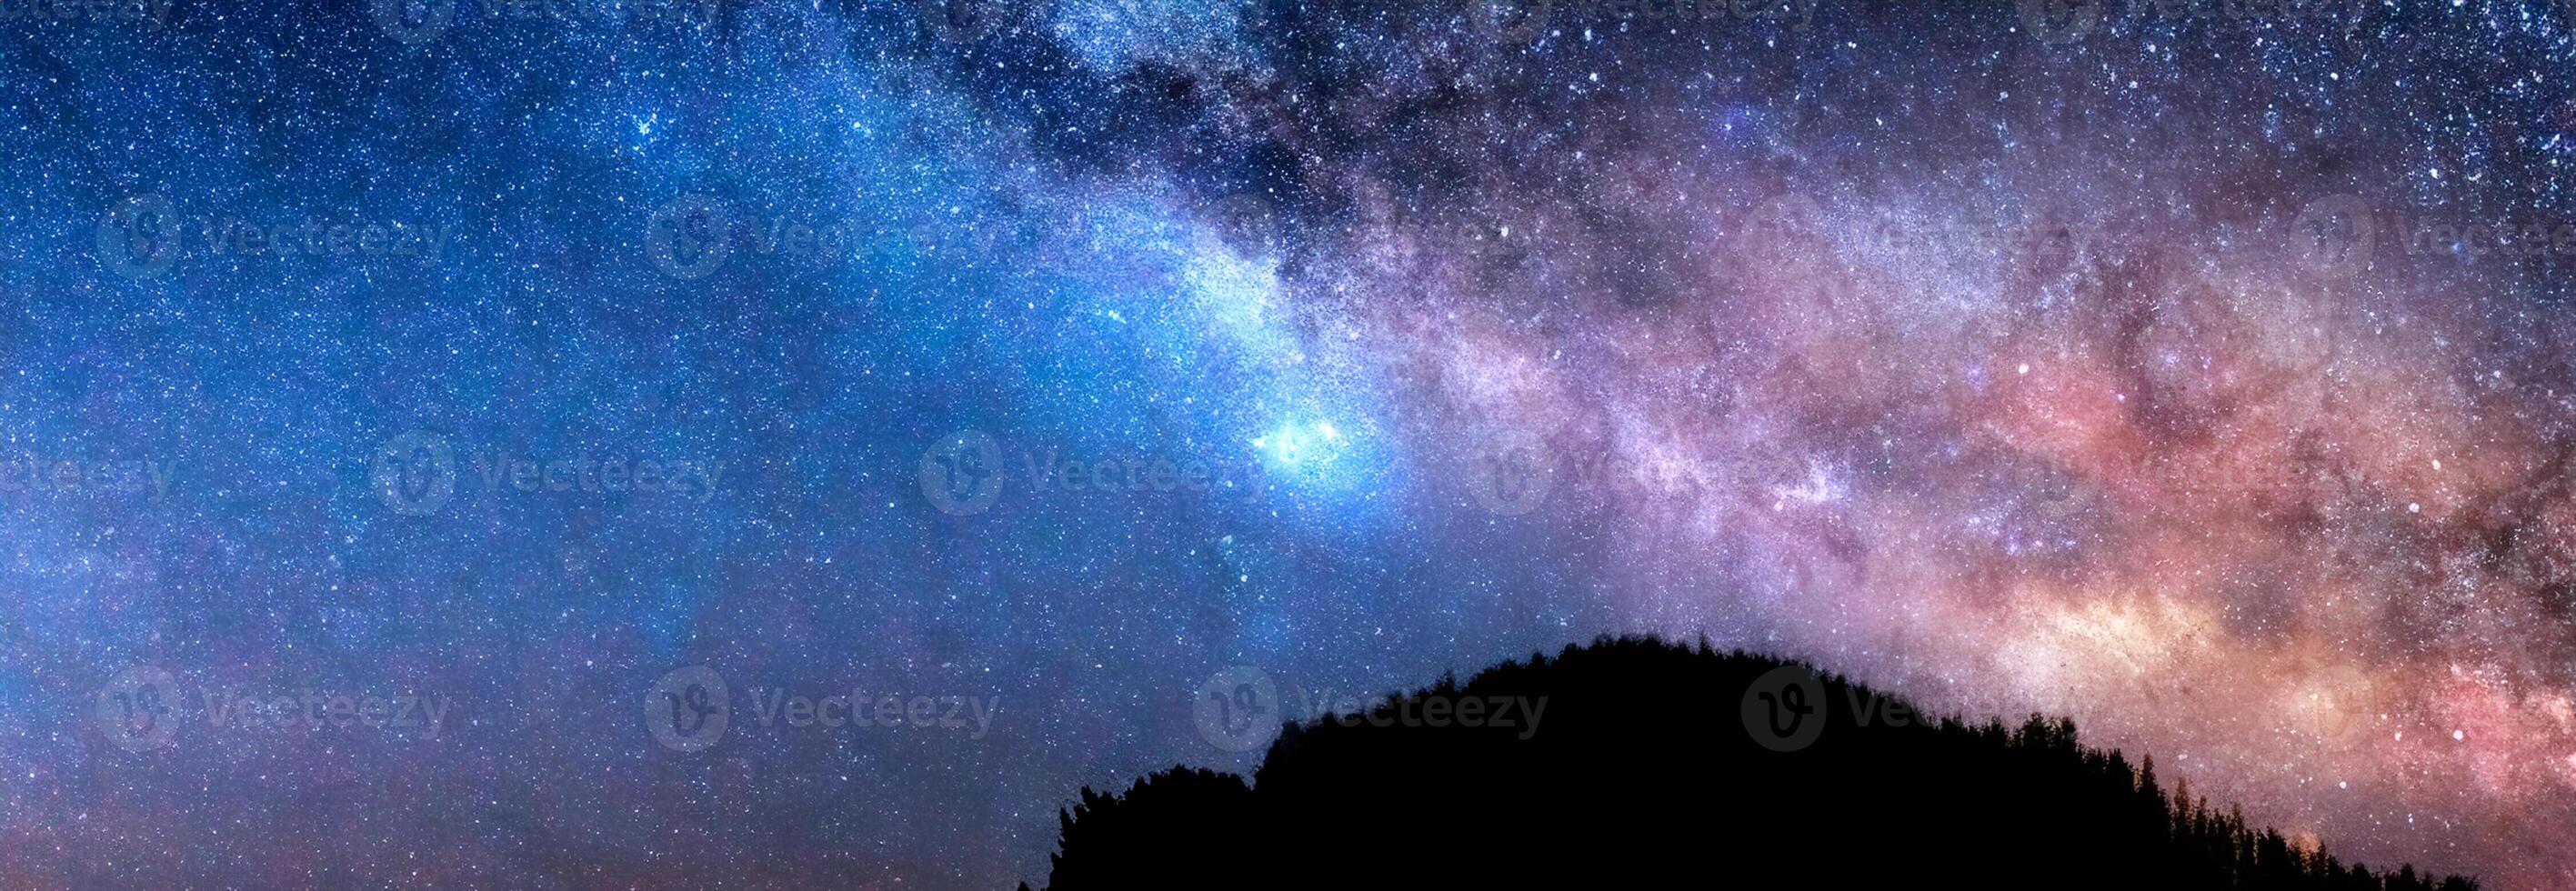 Milky Way galaxy. Starry sky. photo